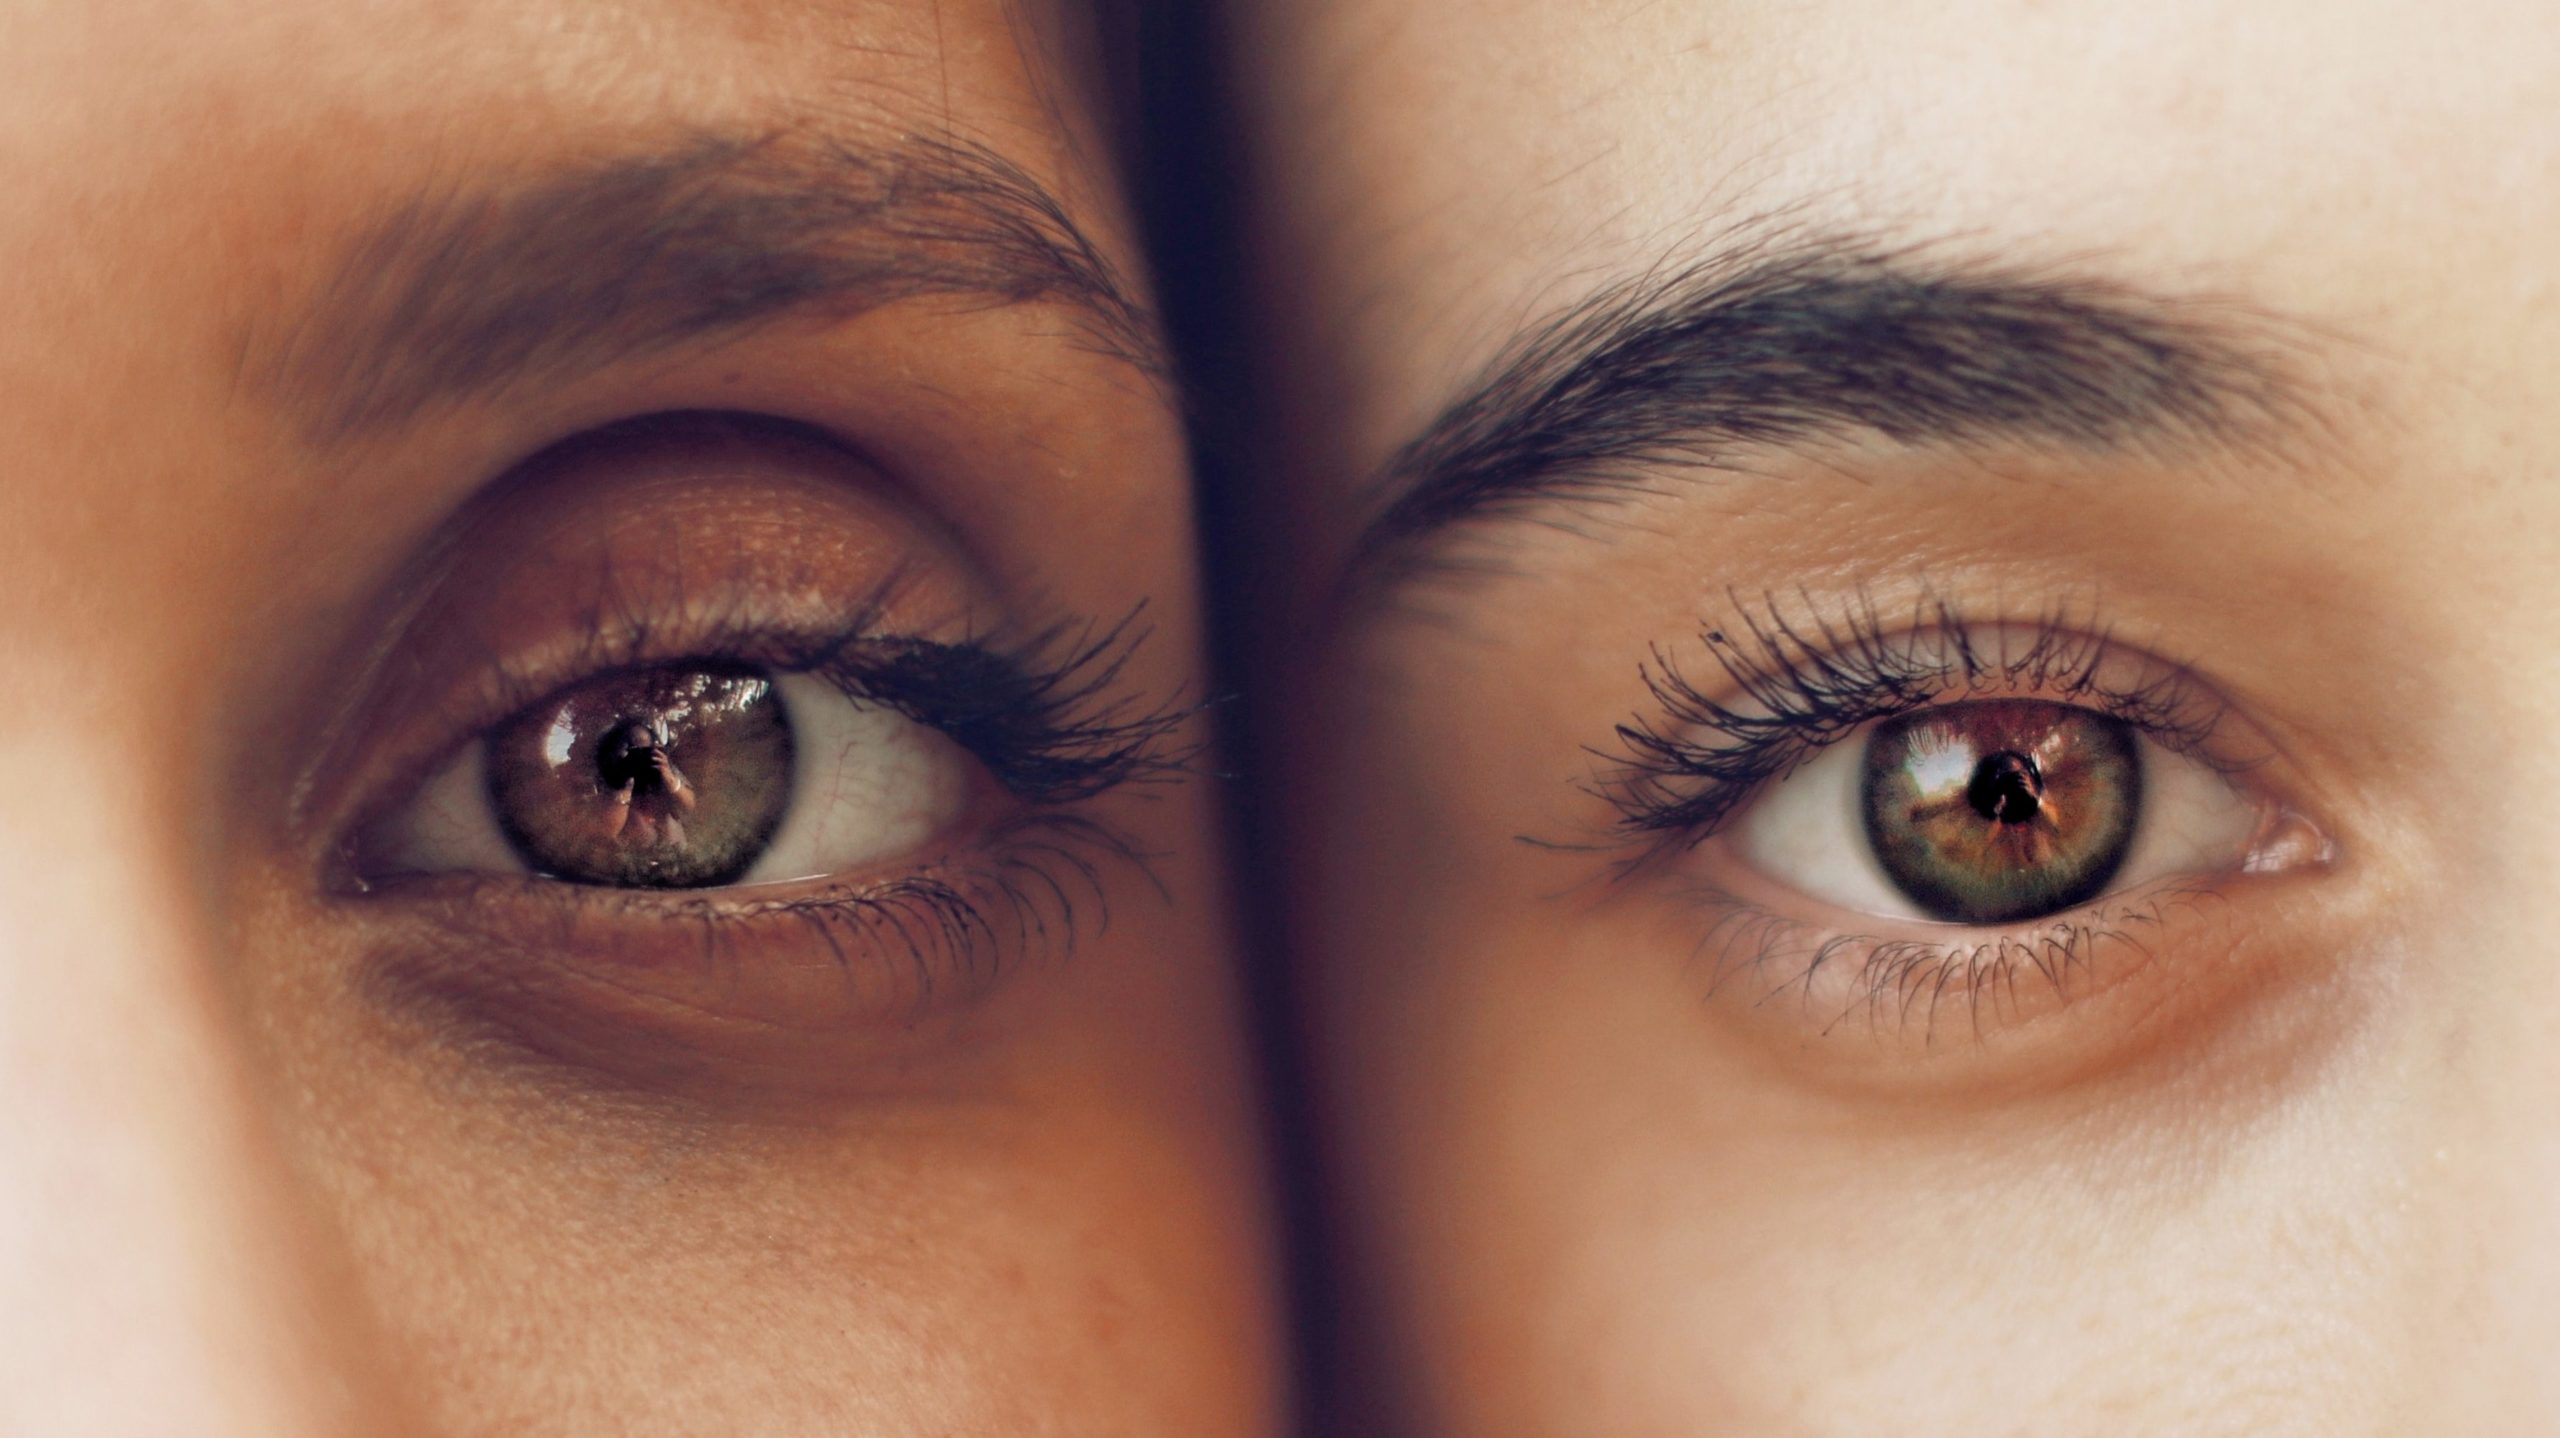 Afbeelding van twee ogen van twee personen met mooie gekrulde wimpers.